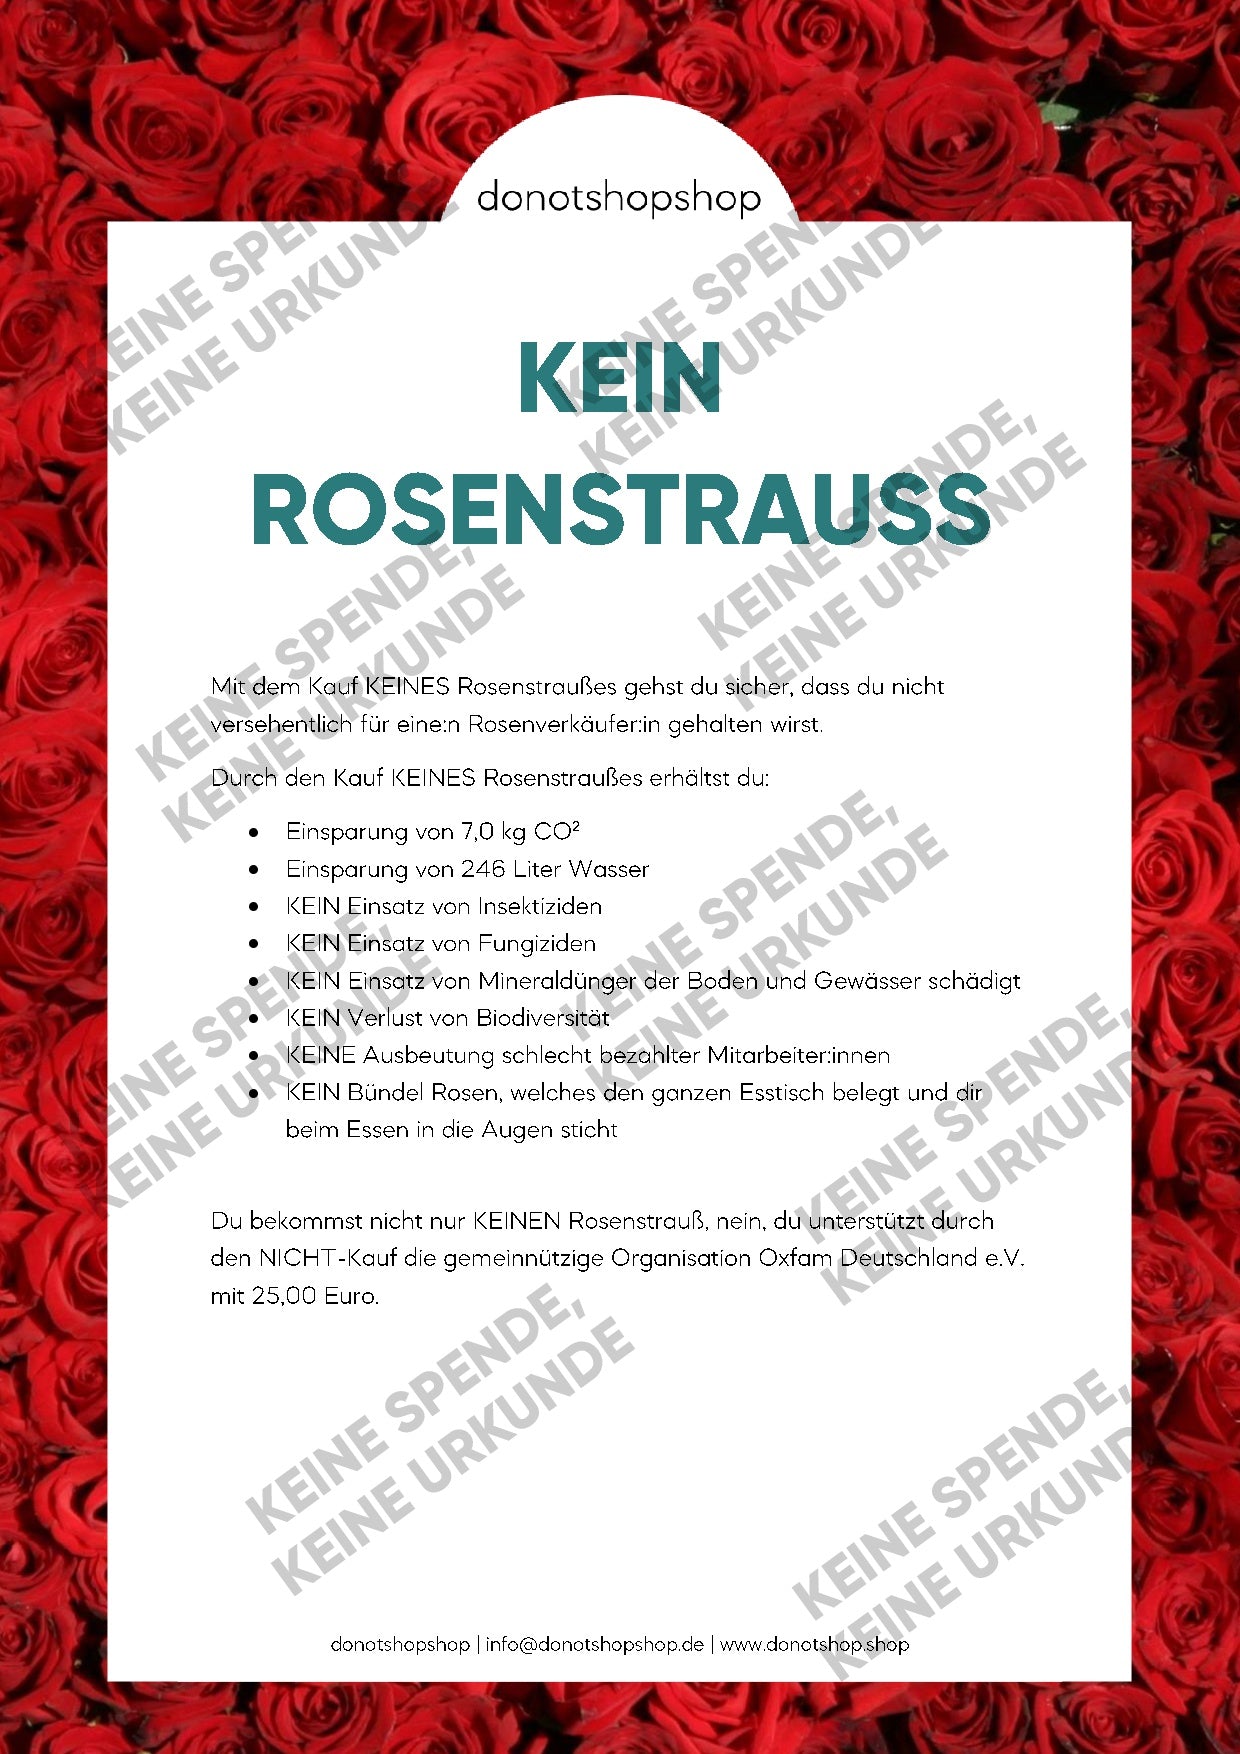 KEIN Rosenstrauß - donotshopshop